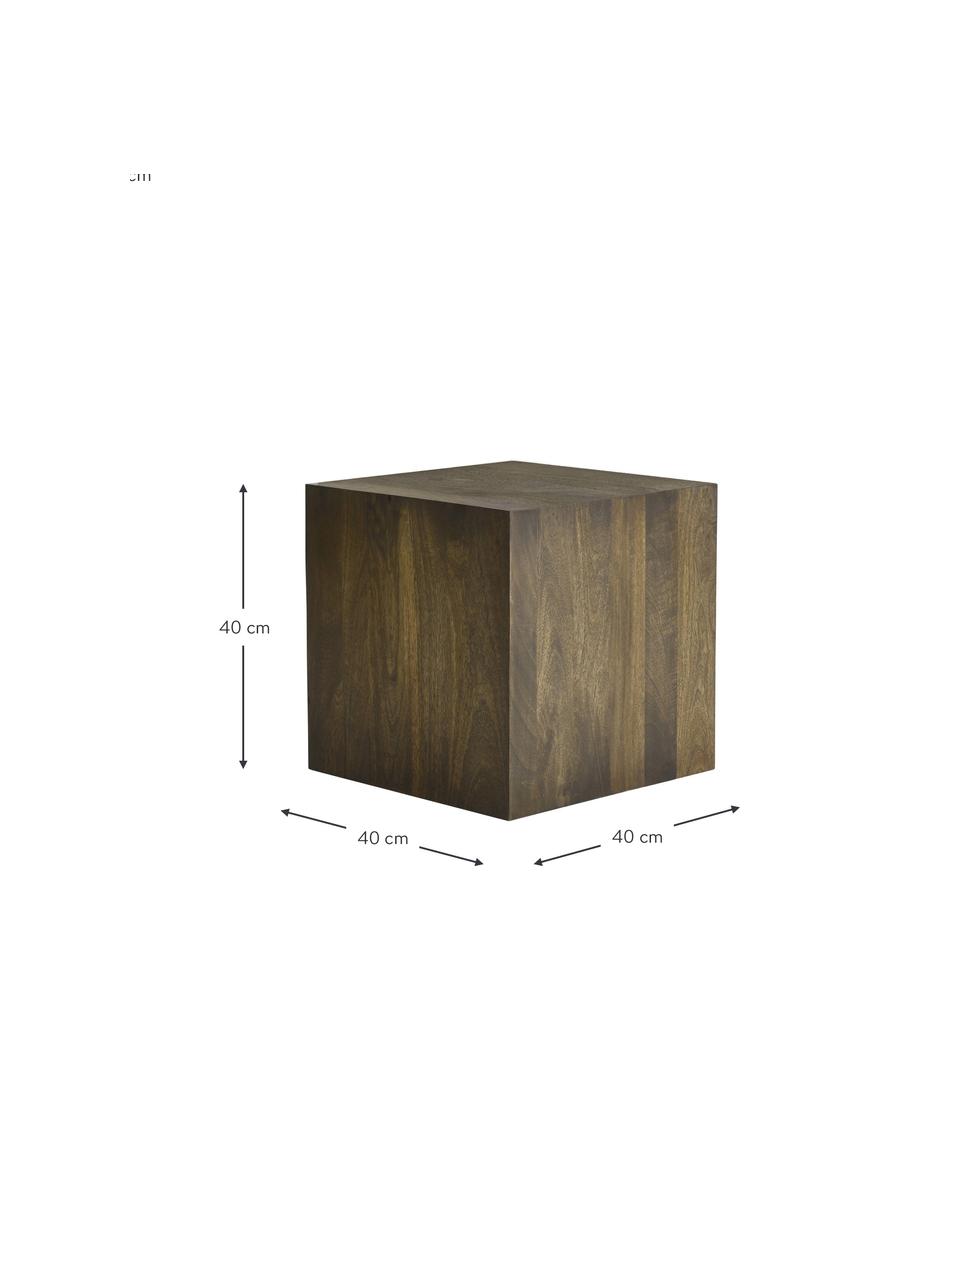 Dřevěný odkládací stolek Box, Mangové dřevo, MDF deska (dřevovláknitá deska střední hustoty), Mangové dřevo, Š 40 cm, V 40 cm